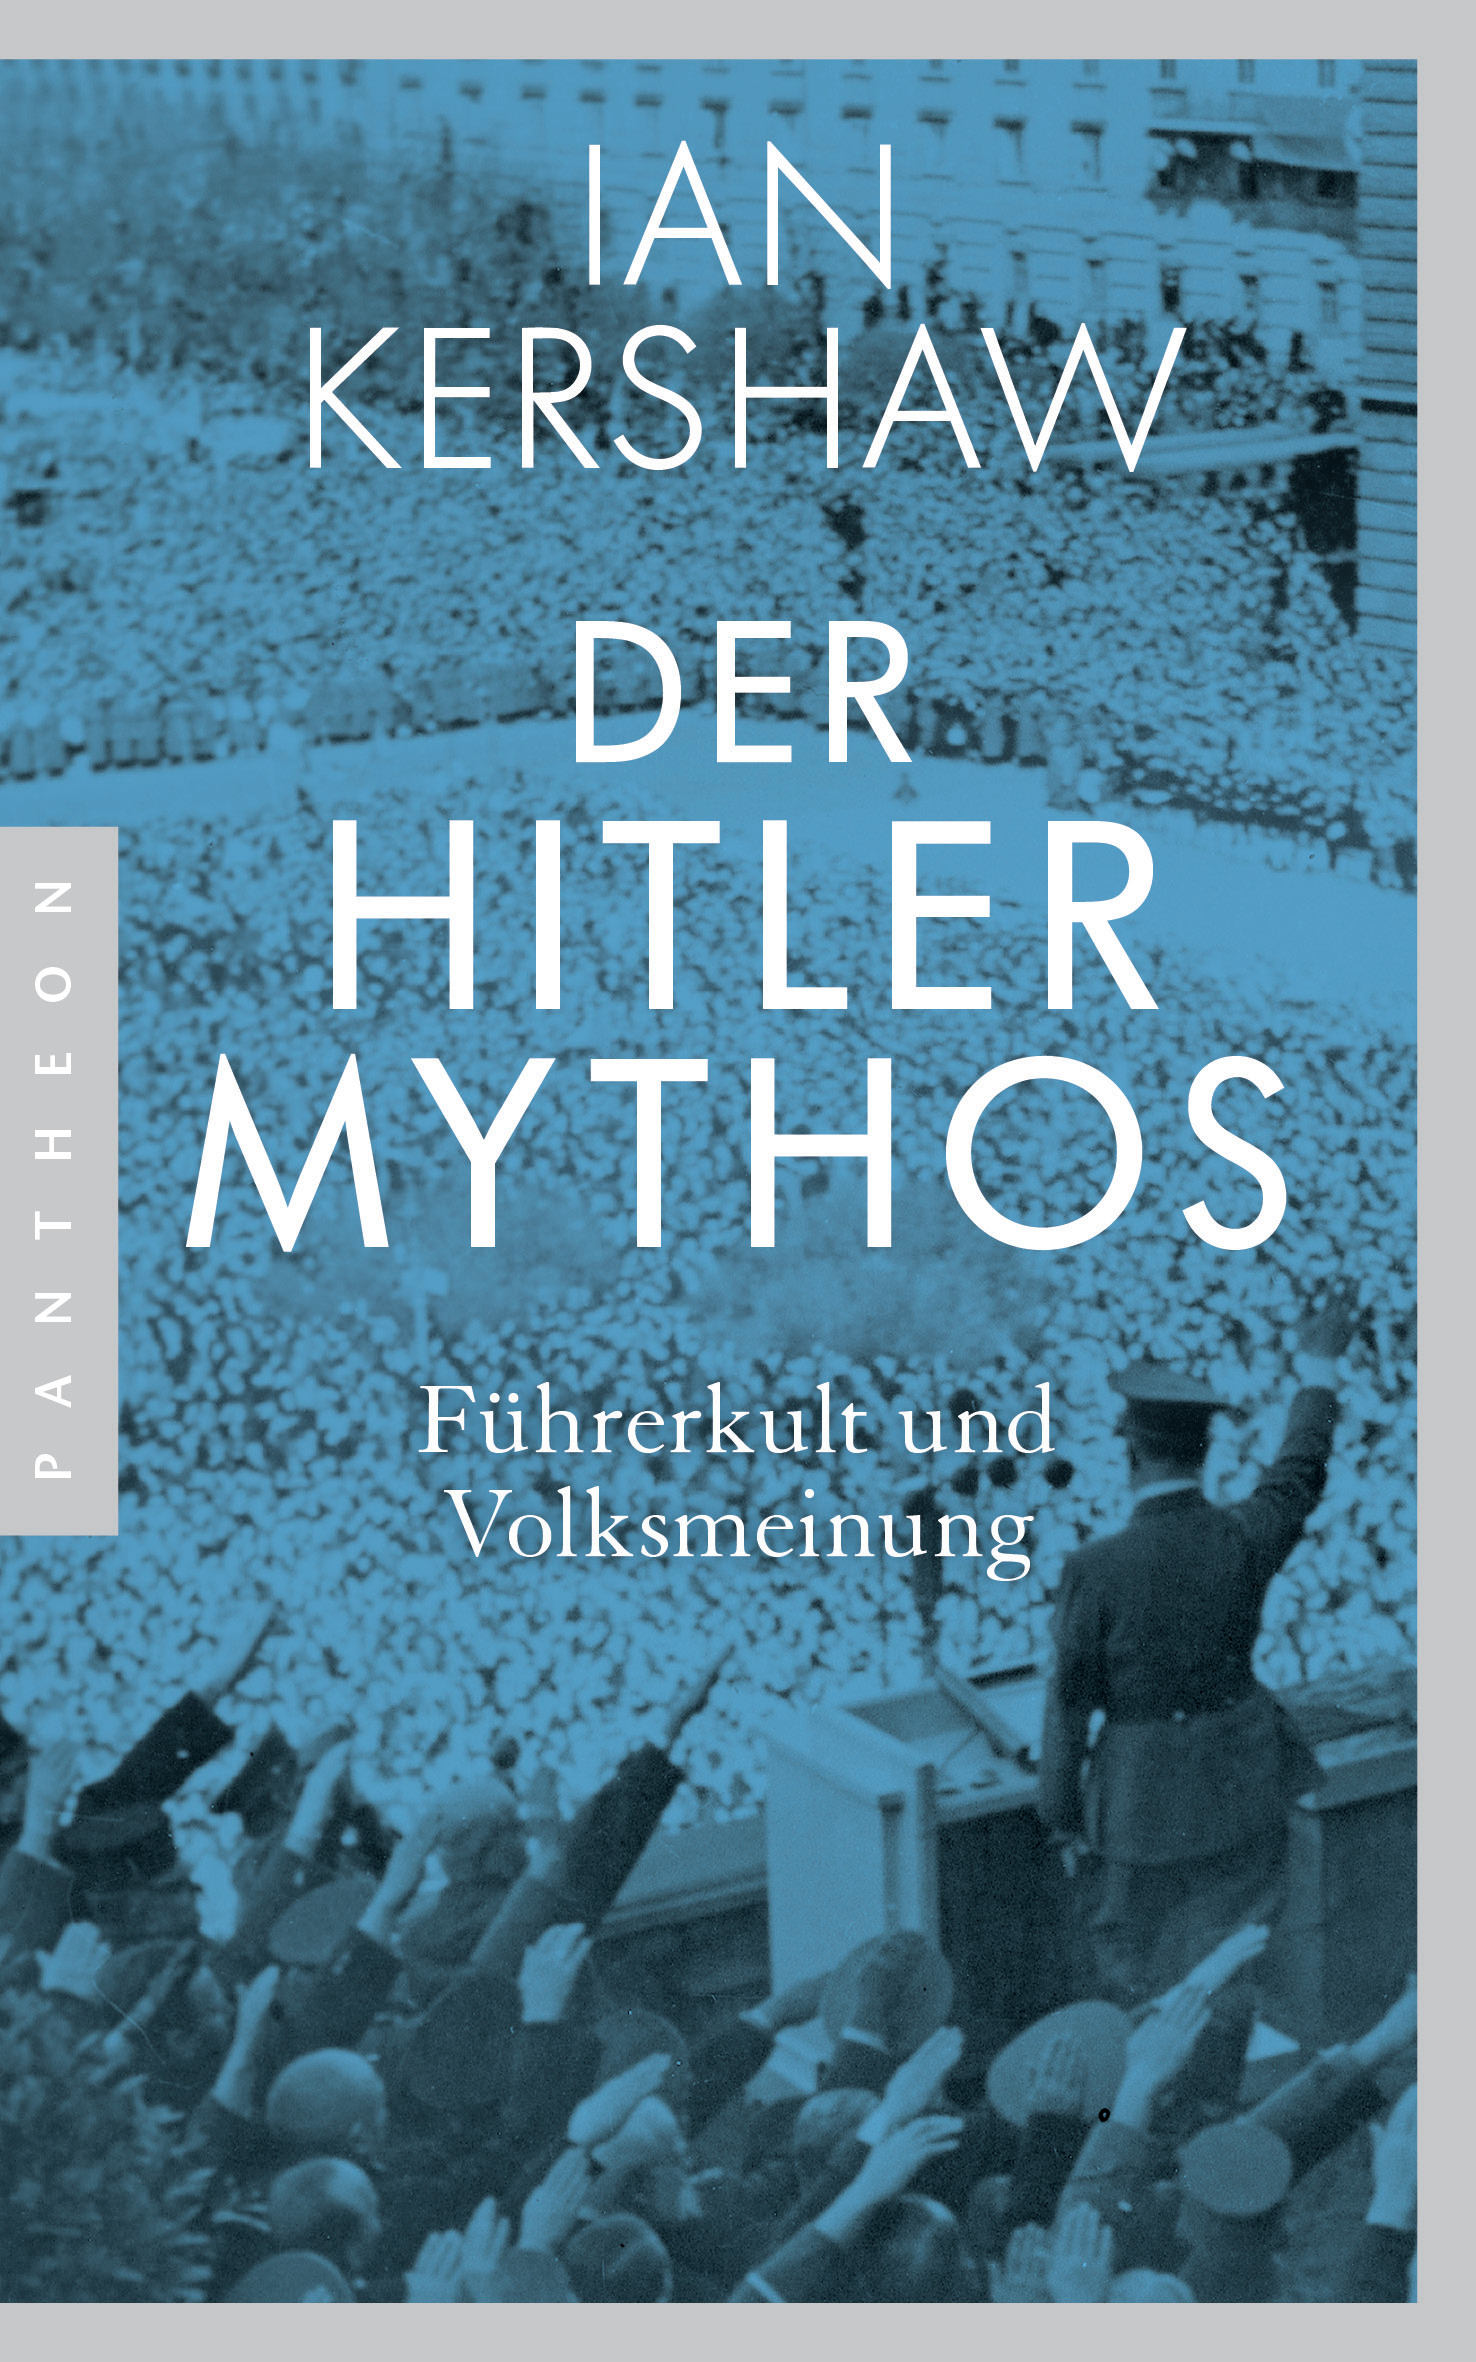 Buchcover: Ian Kershaw: Der Hitler-Mythos. Führerkult und Volksmeinung